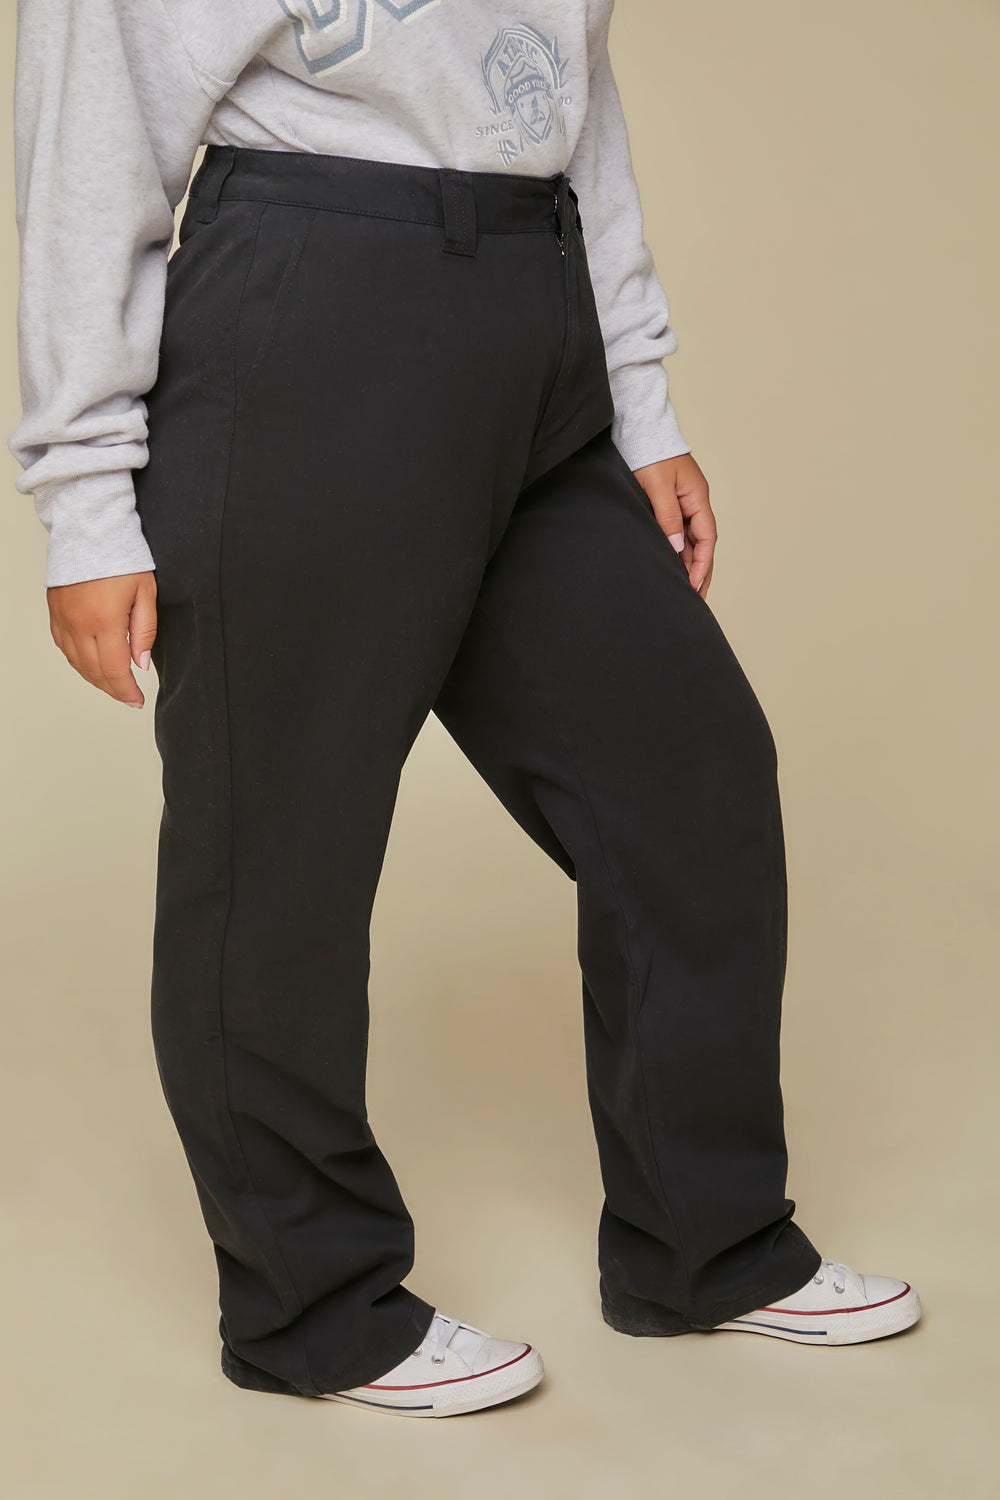 Plus Size Wide-Leg Pants Black